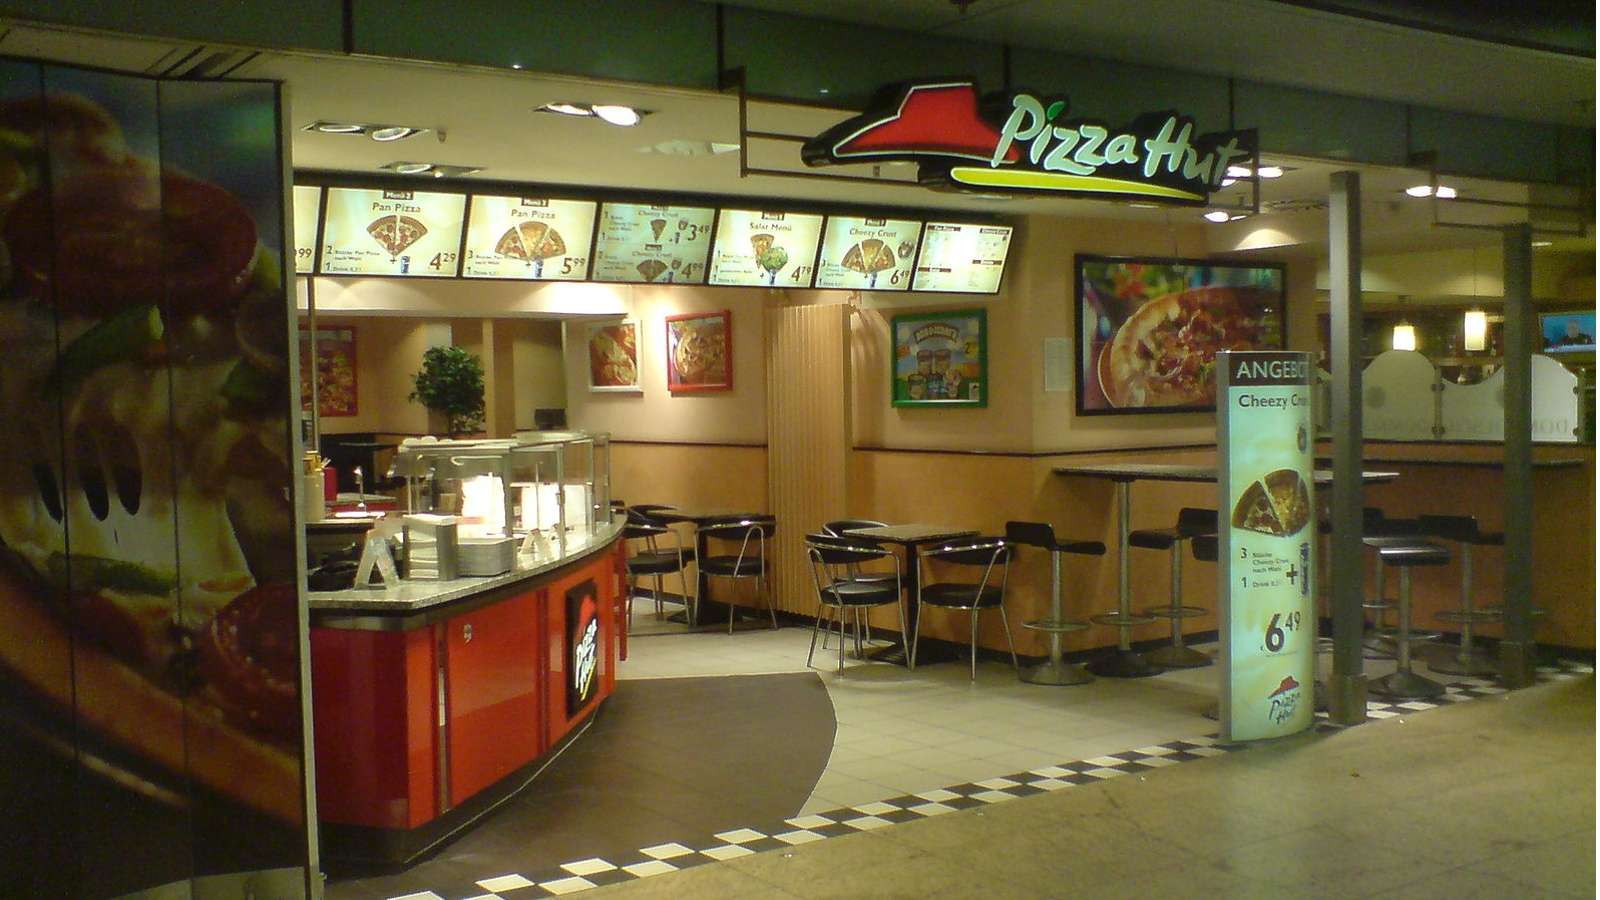 Pizza hut restaurant